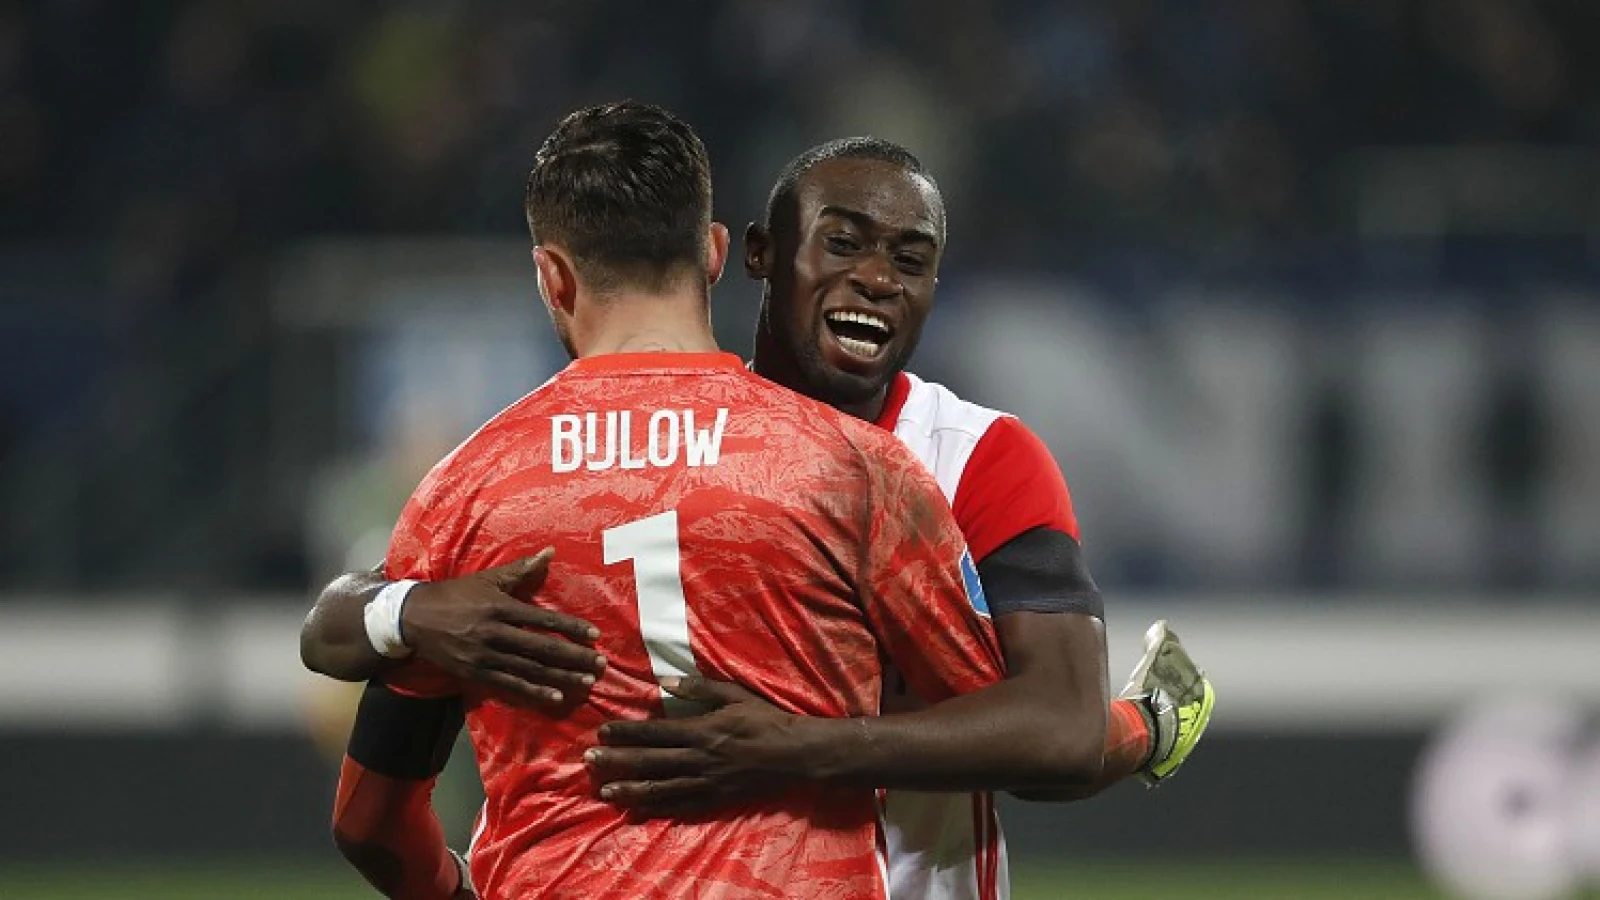 VI:'Bijlow en Feyenoord weer in gesprek, Geertruida staat open voor langer verblijf'